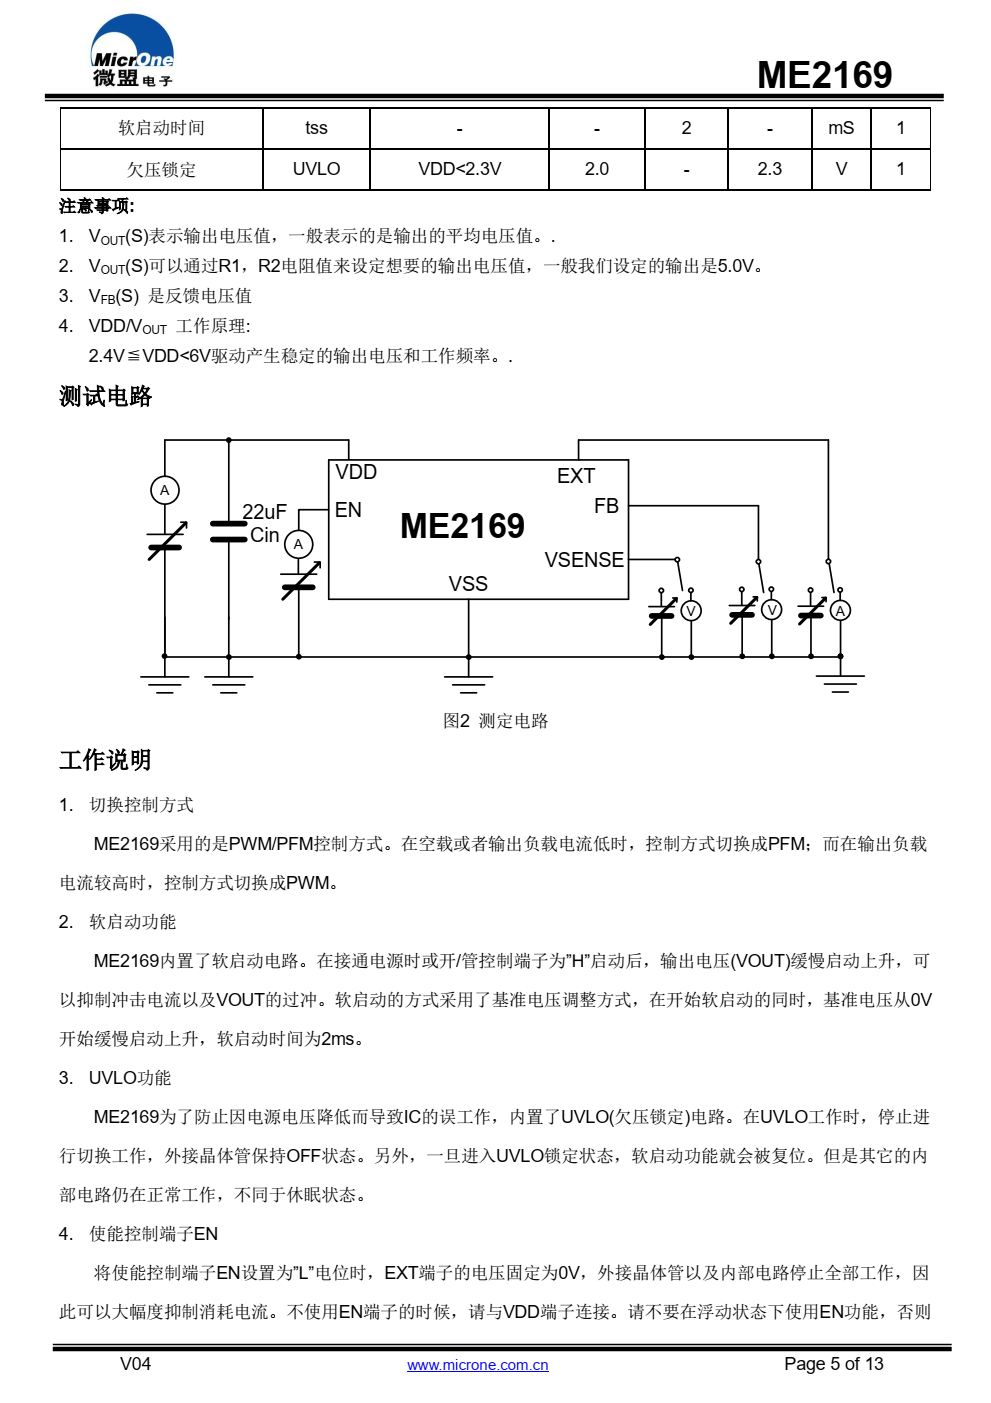 ME2169是一款由基准电压源、振荡电路、误差放 大电路、相位补偿电路、电流限制电路